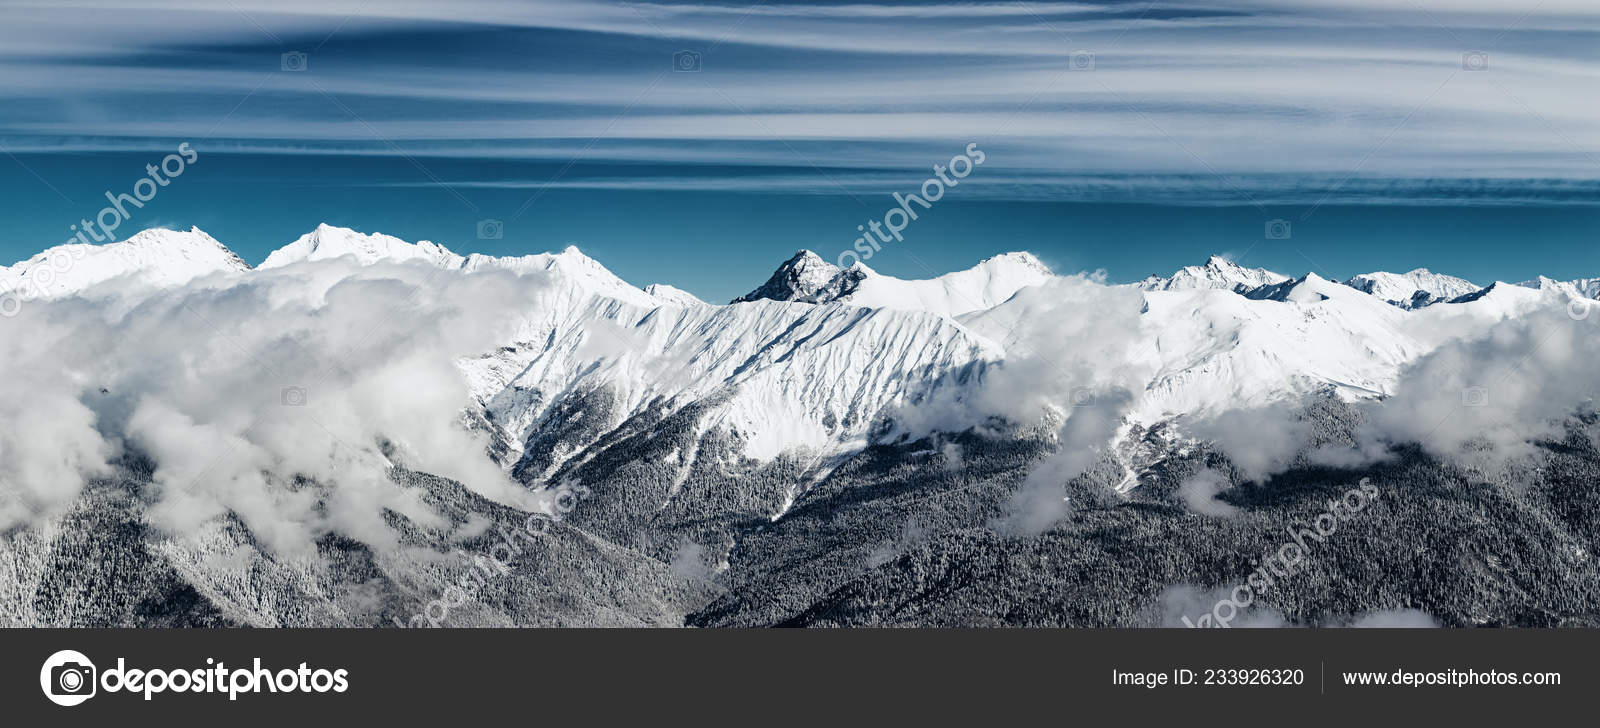 西コーカサス山脈写真素材 ロイヤリティフリー西コーカサス山脈画像 Depositphotos